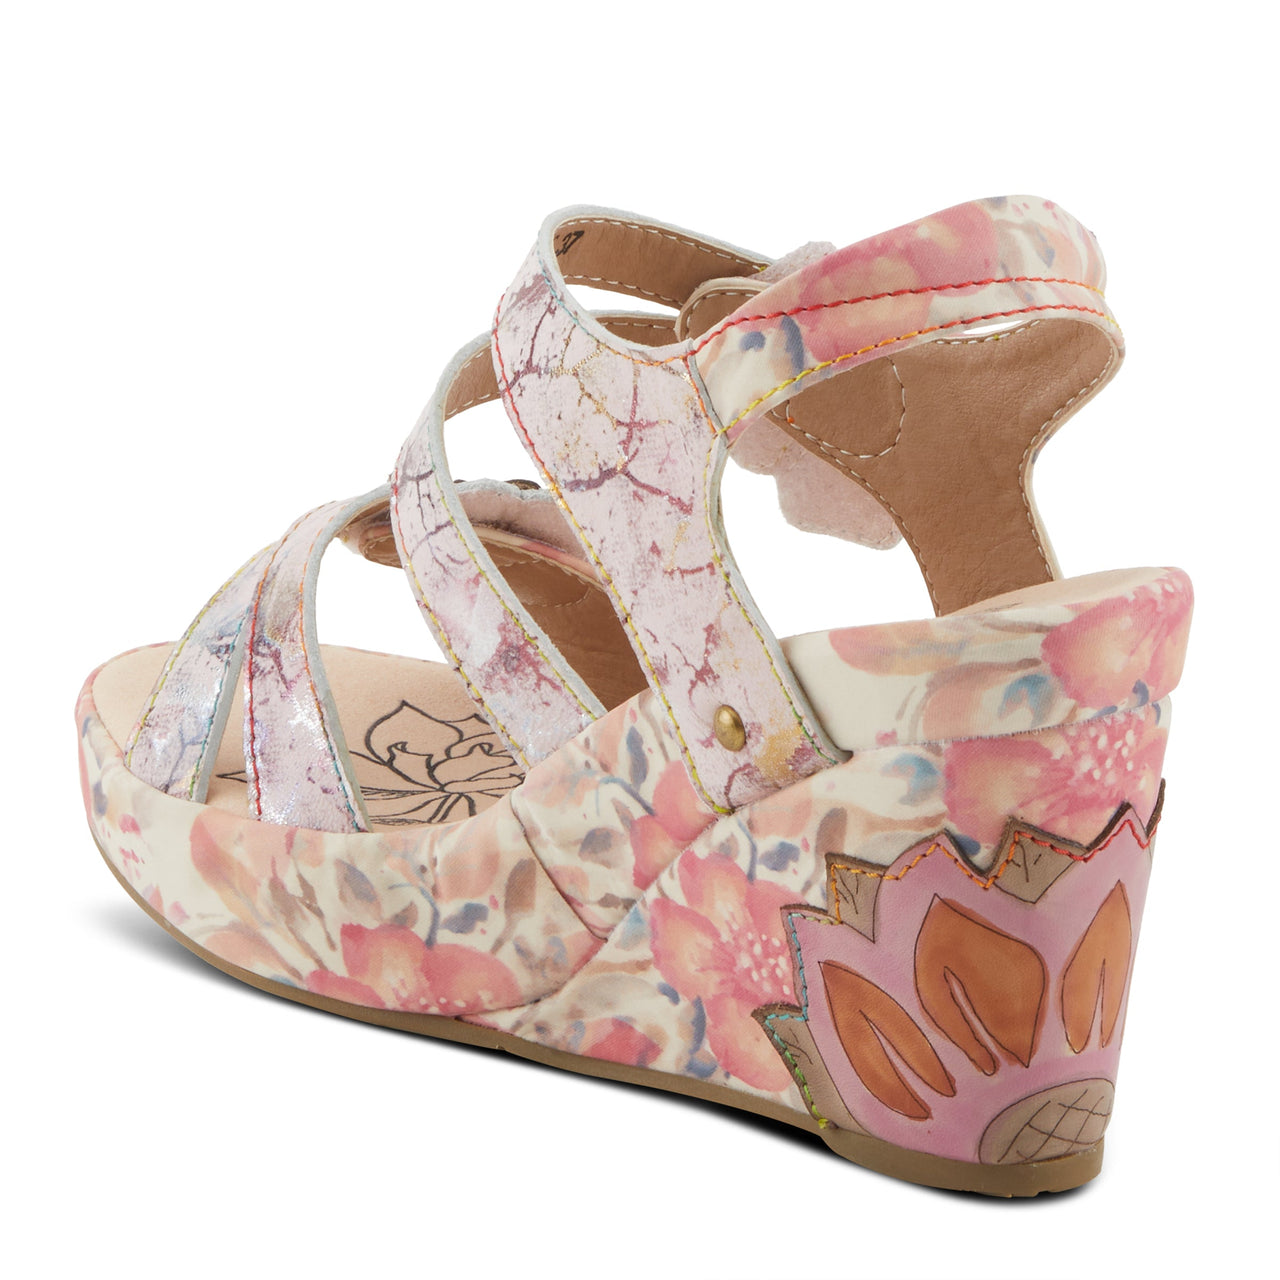 Spring Step Shoes L'Artiste Karnitsky Sandals